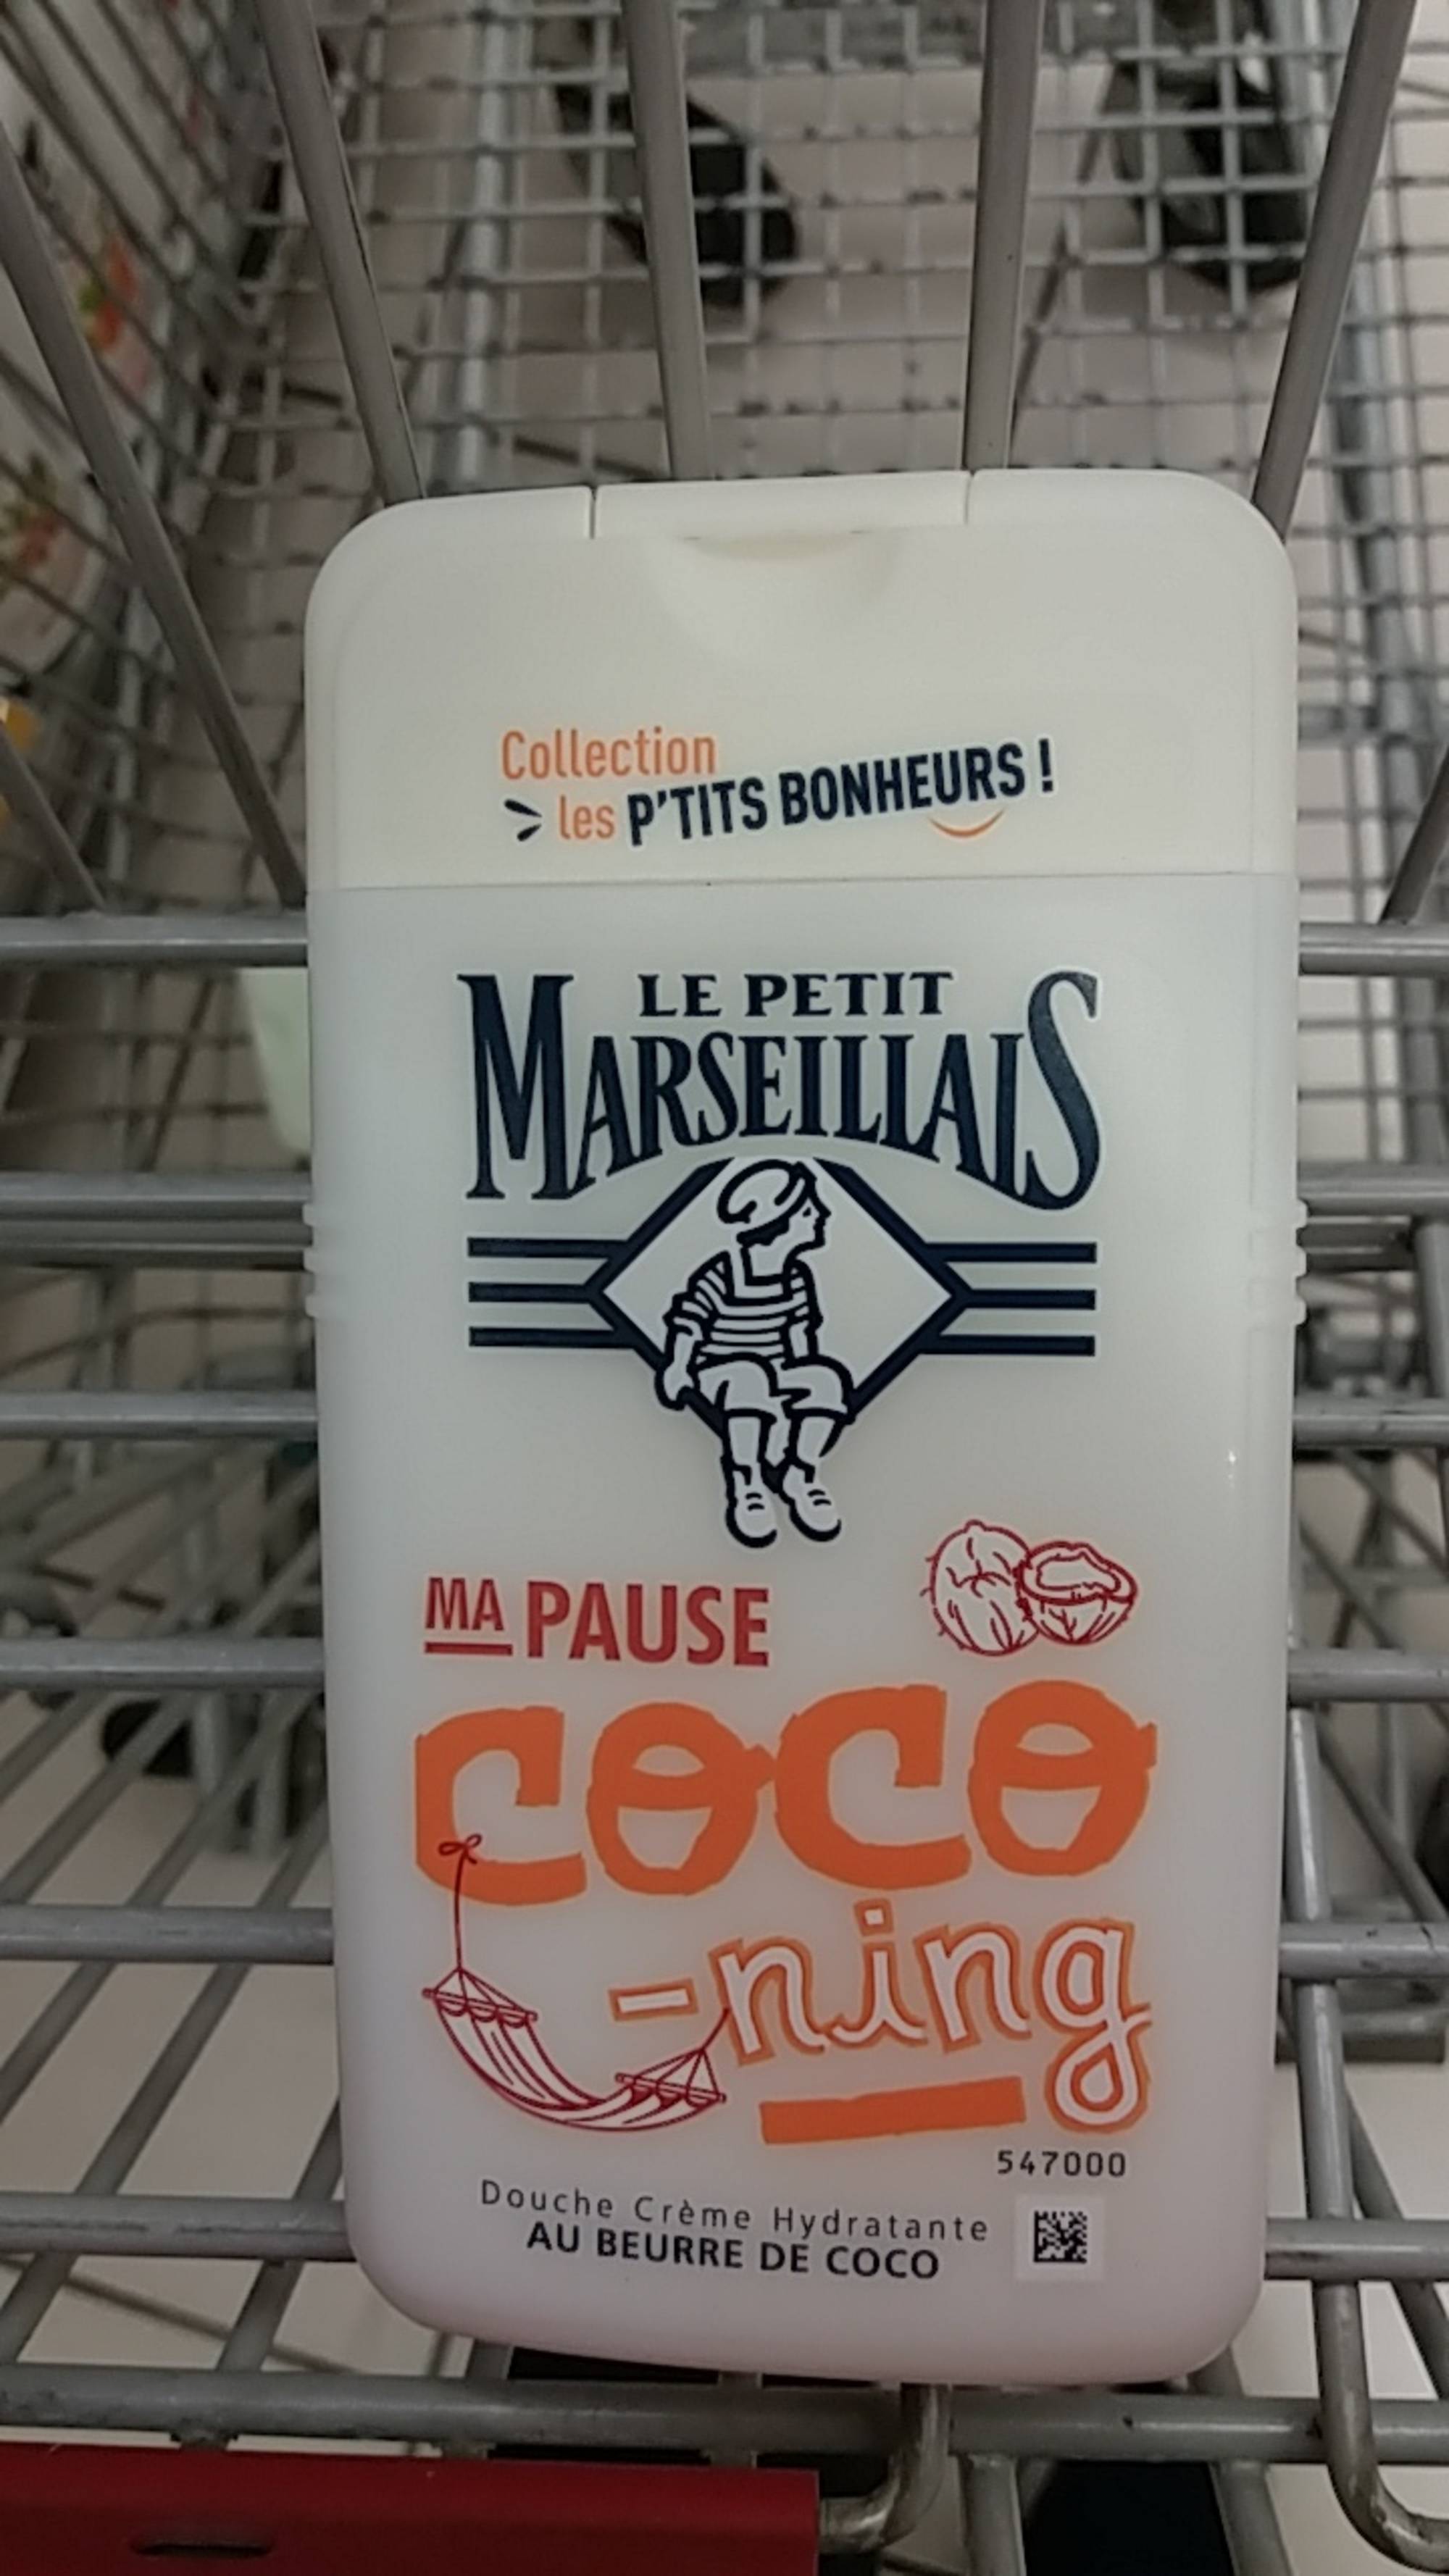 LE PETIT MARSEILLAIS - Douche Crème hydratante au beurre de coco